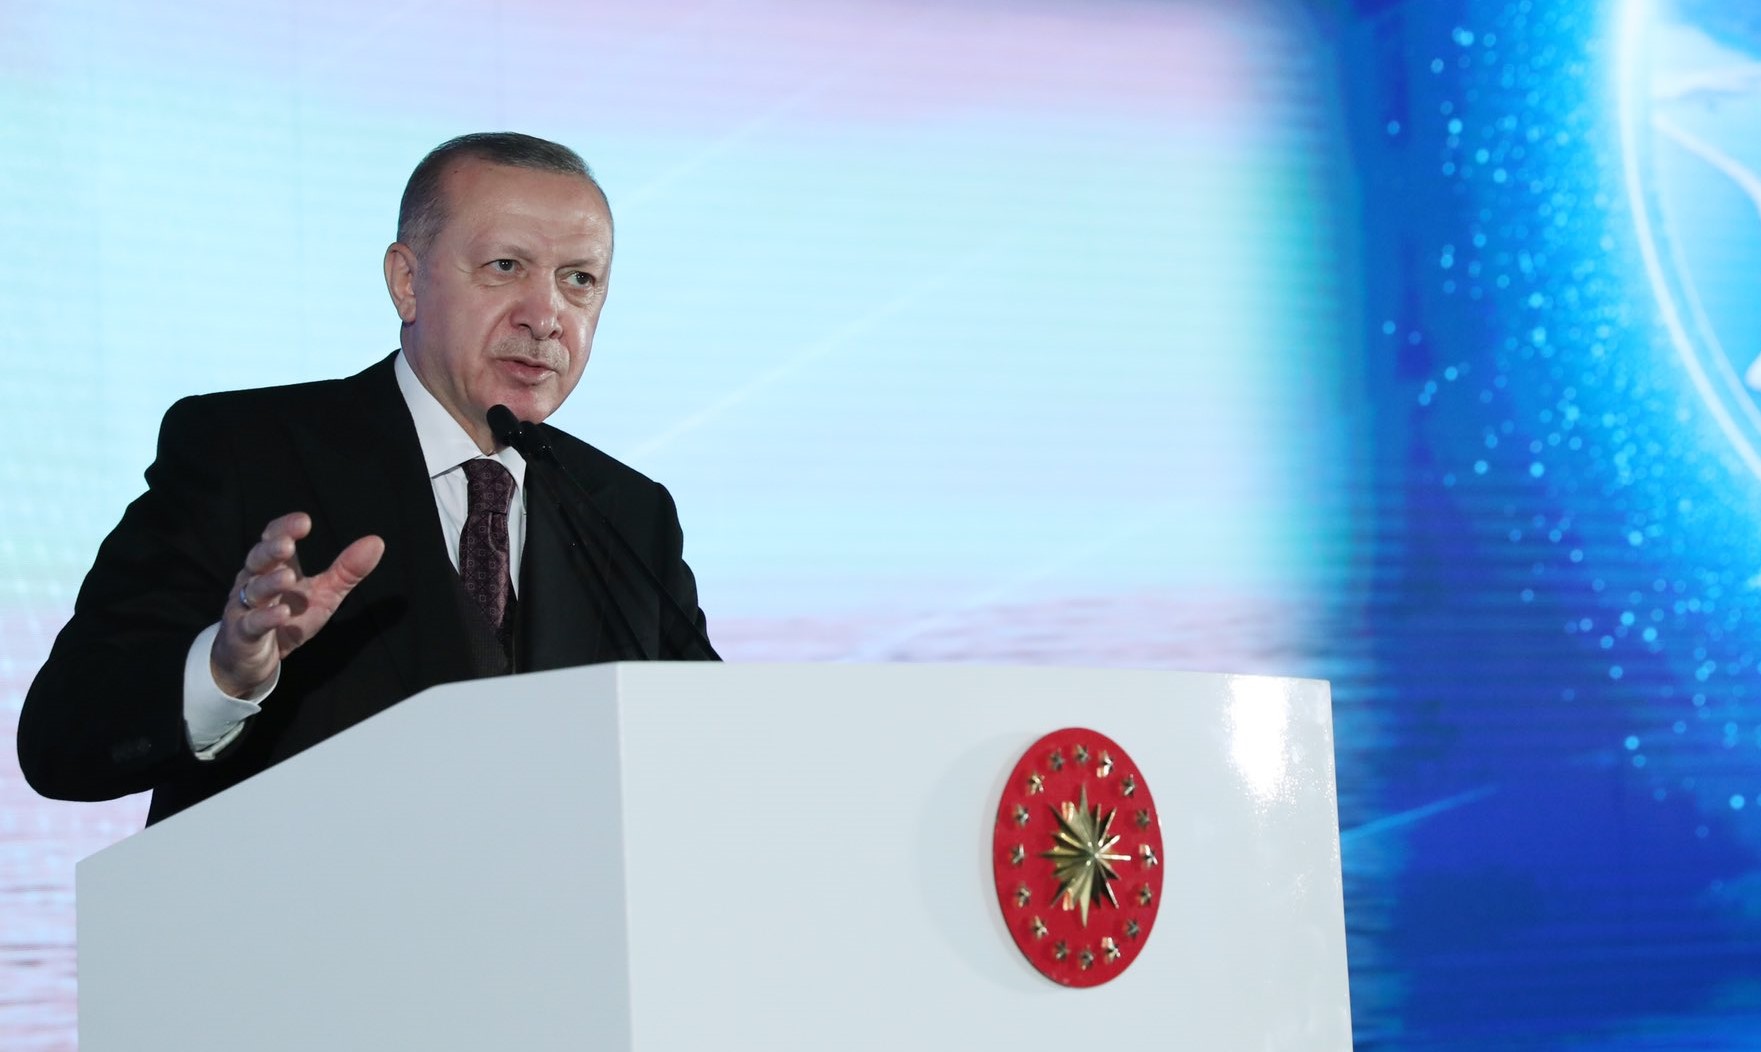 erdoghan: nishanimiz «Türksat 5B» süniy hemrahimizni alem boshluqigha yollashtur